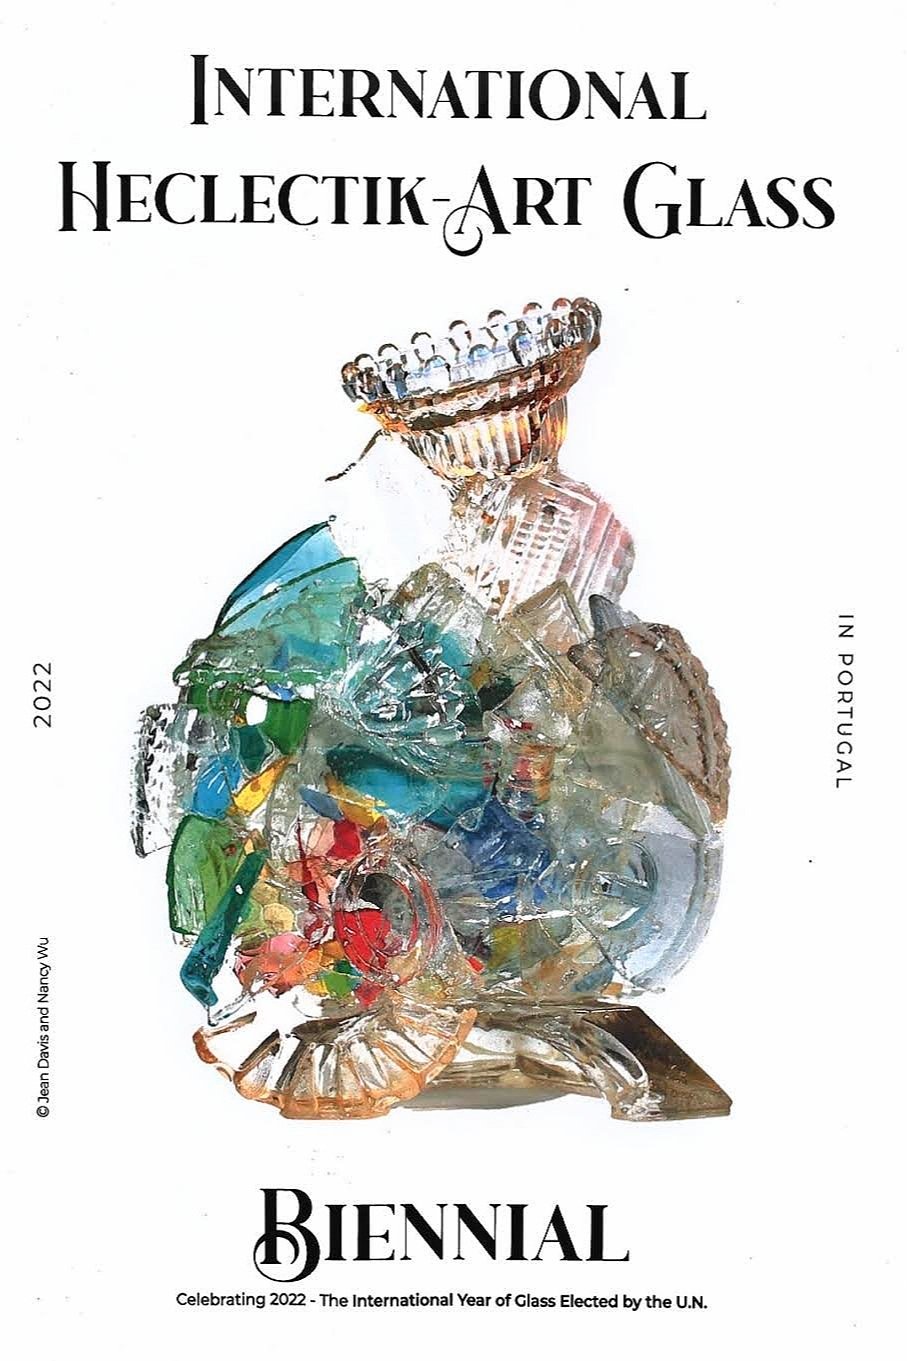 International Heclectik Art Glass Biennial exhibition booklet featuring Carrie Gustafson